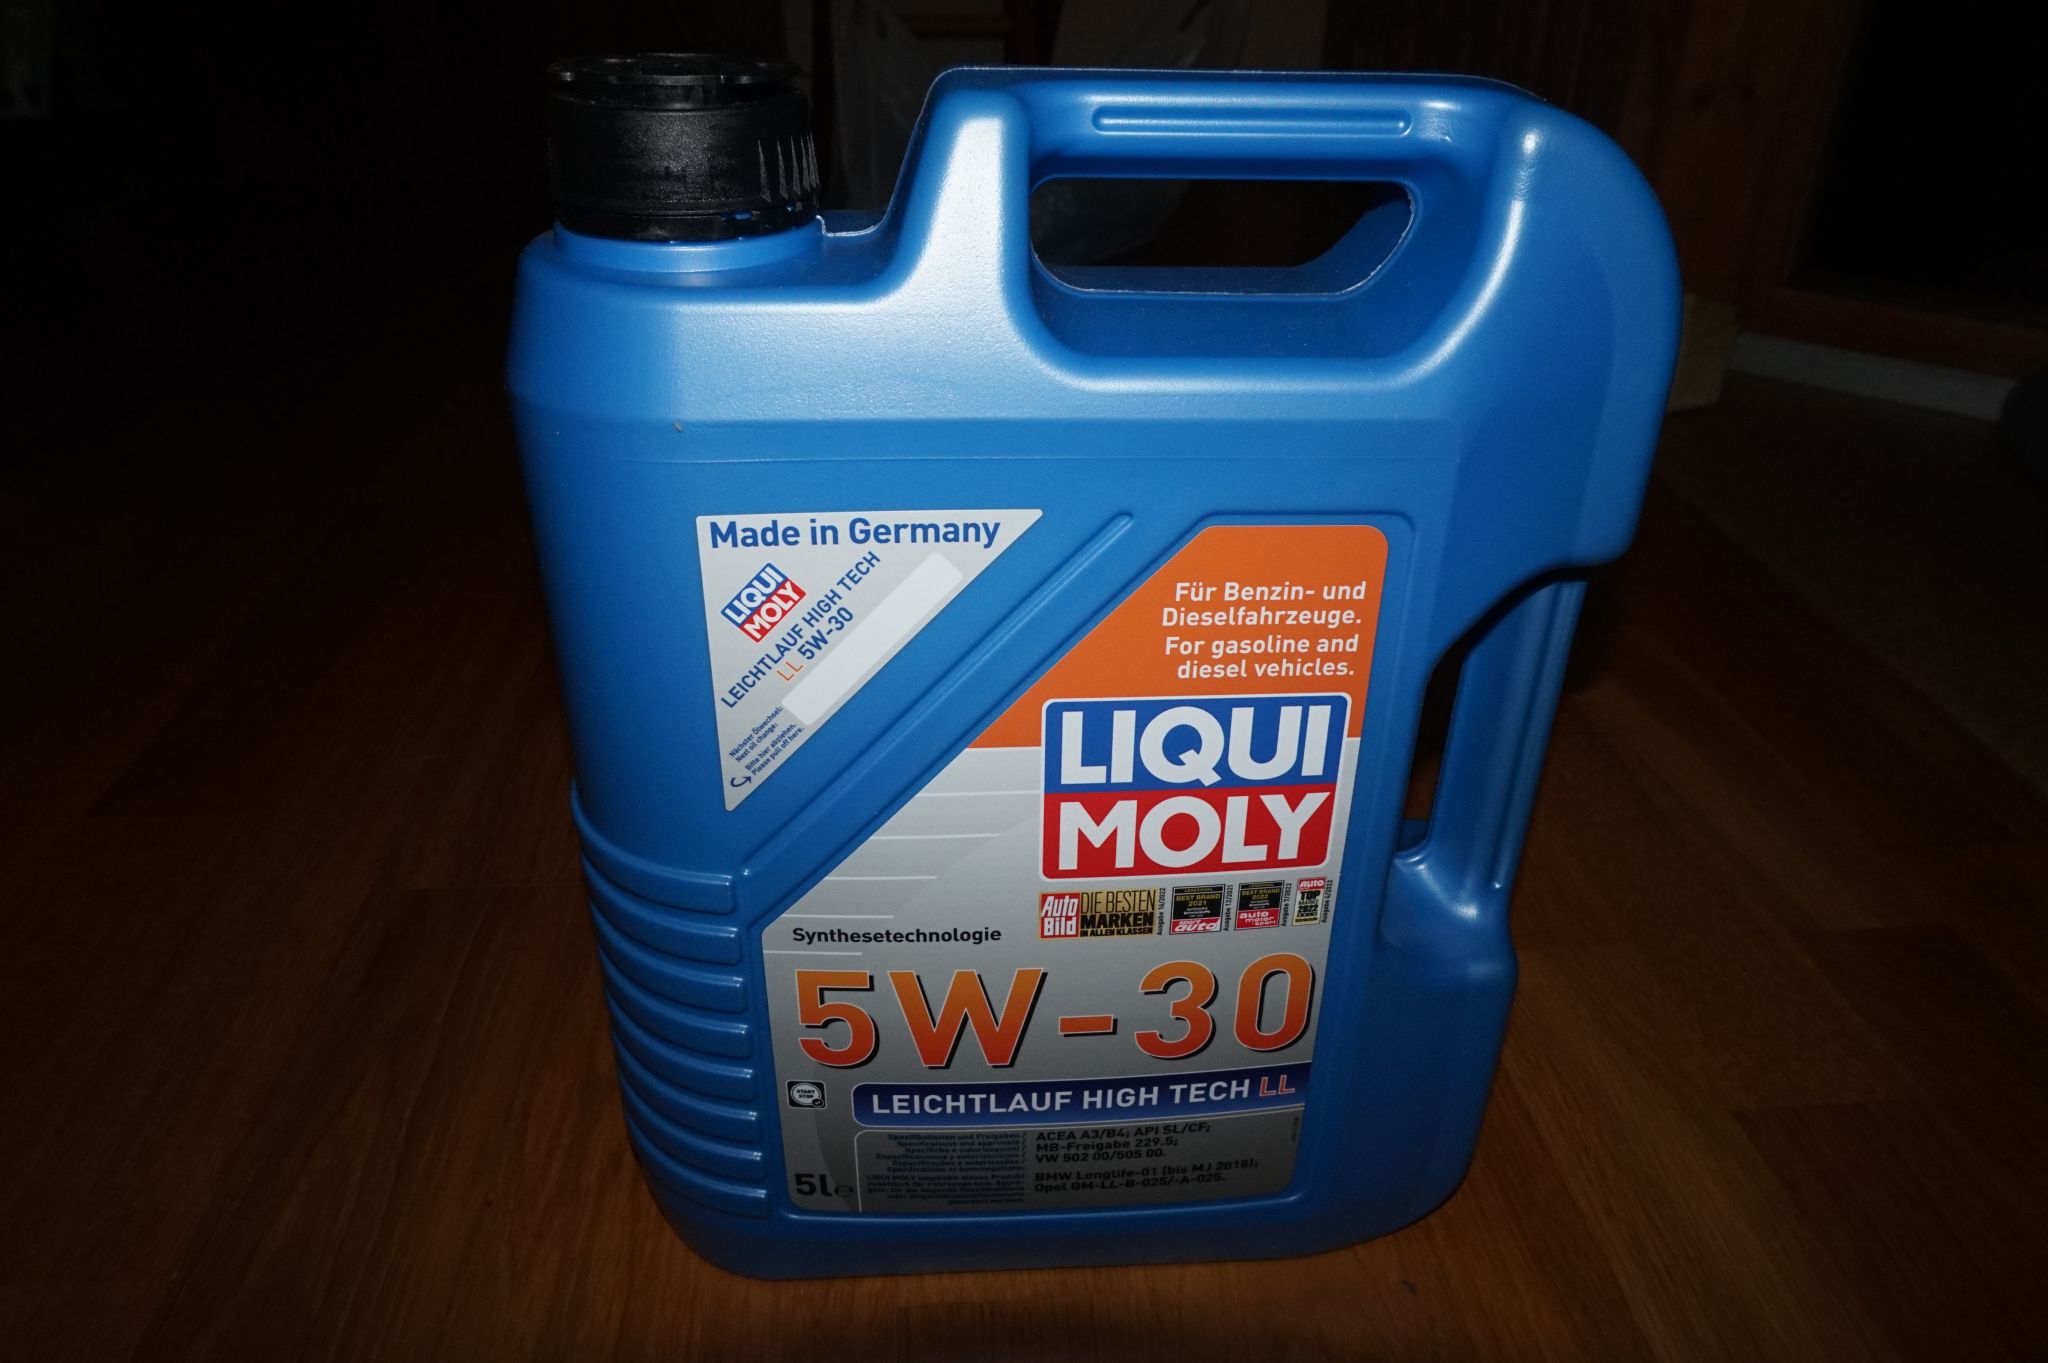 Моторное масло liqui moly leichtlauf. Ликви моли 5w30 Leichtlauf High Tech. Масло Ликви моли детальная фото.